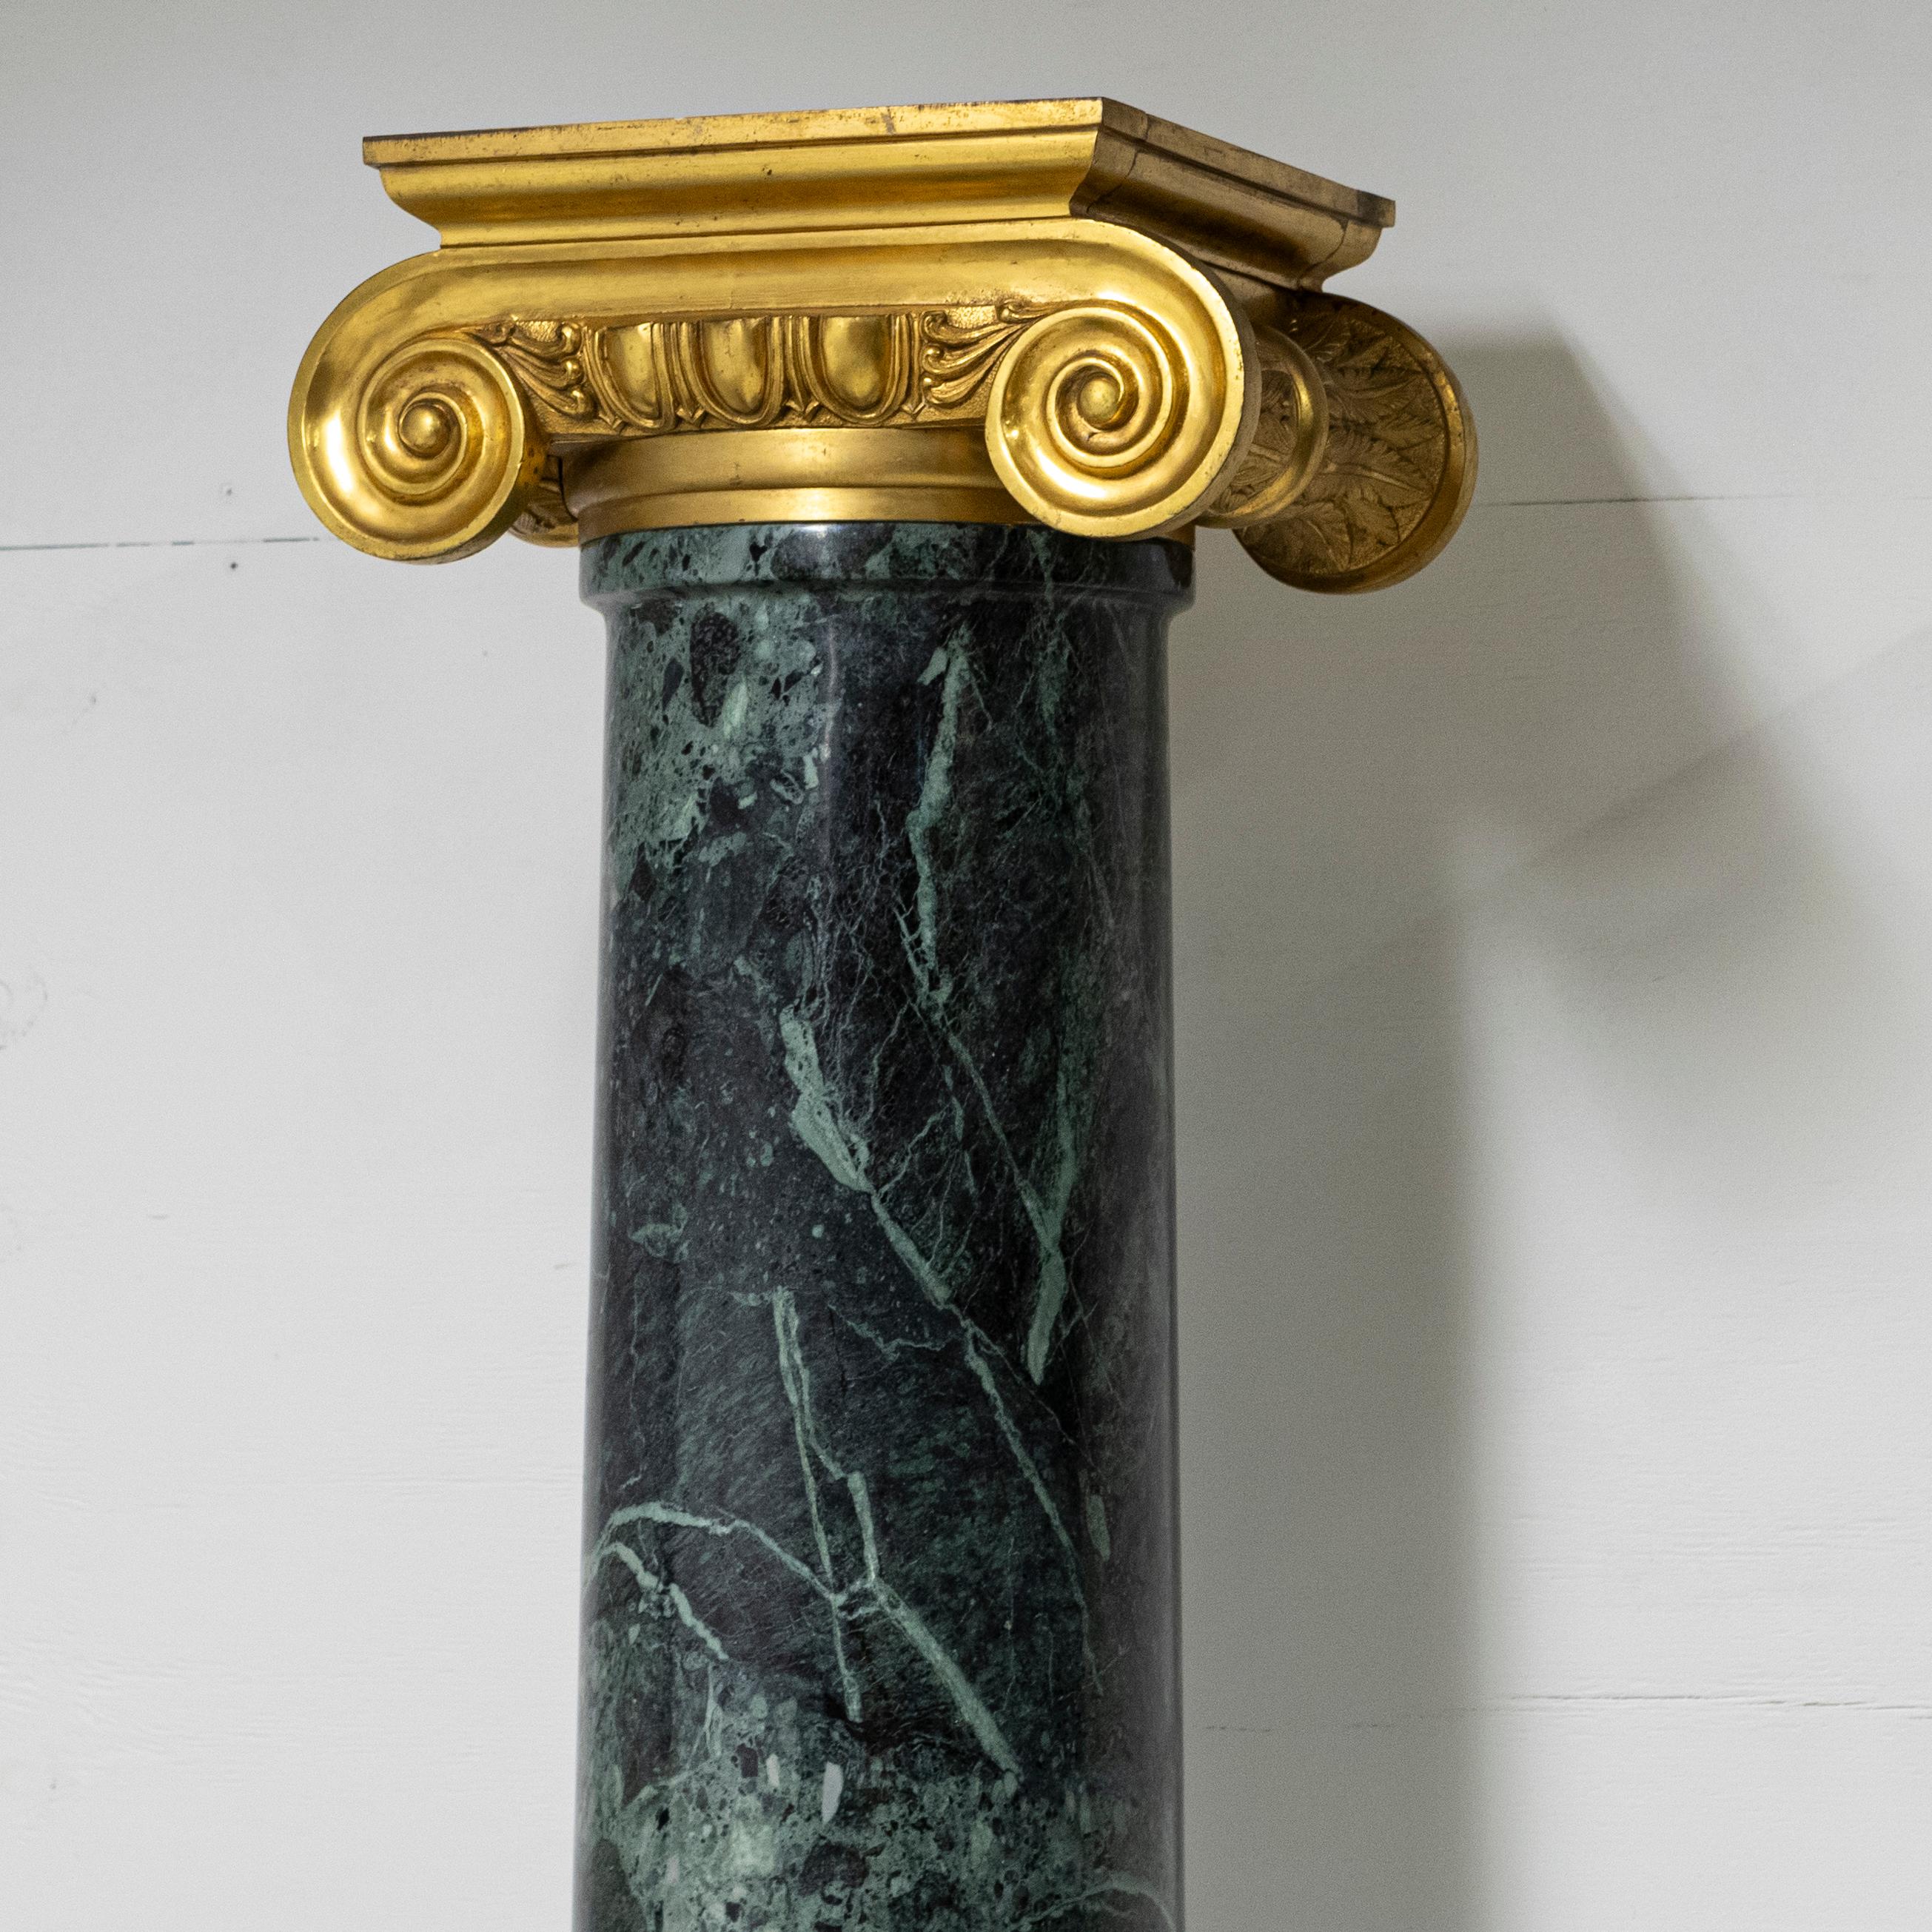 capitals of columns